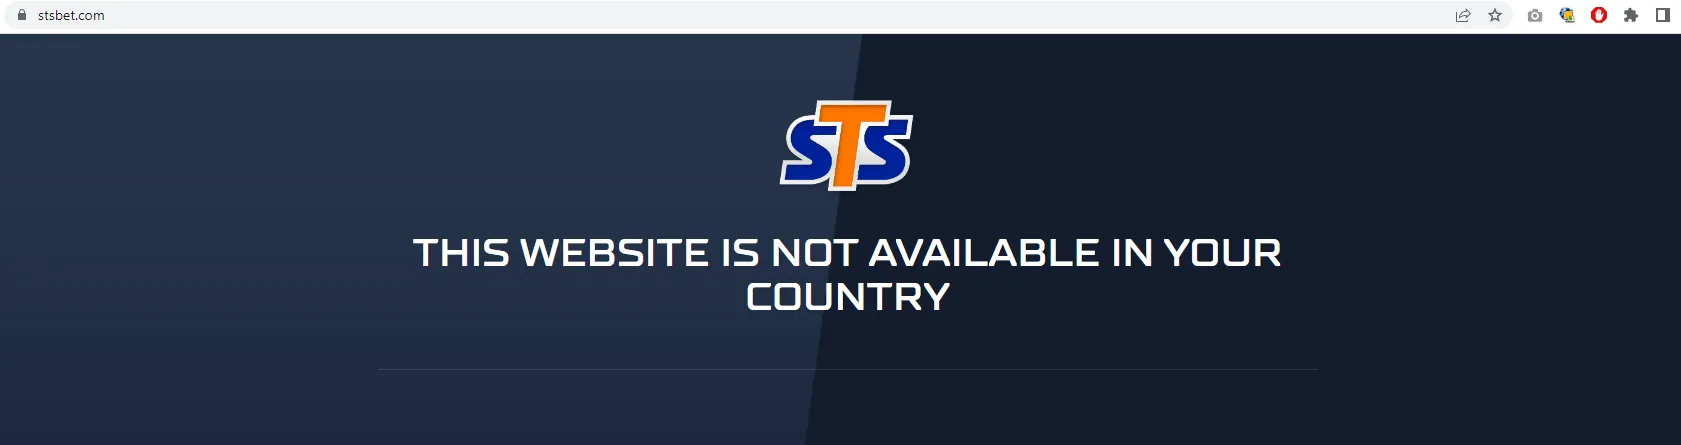 Strona stsbet.com nie działa w Polsce